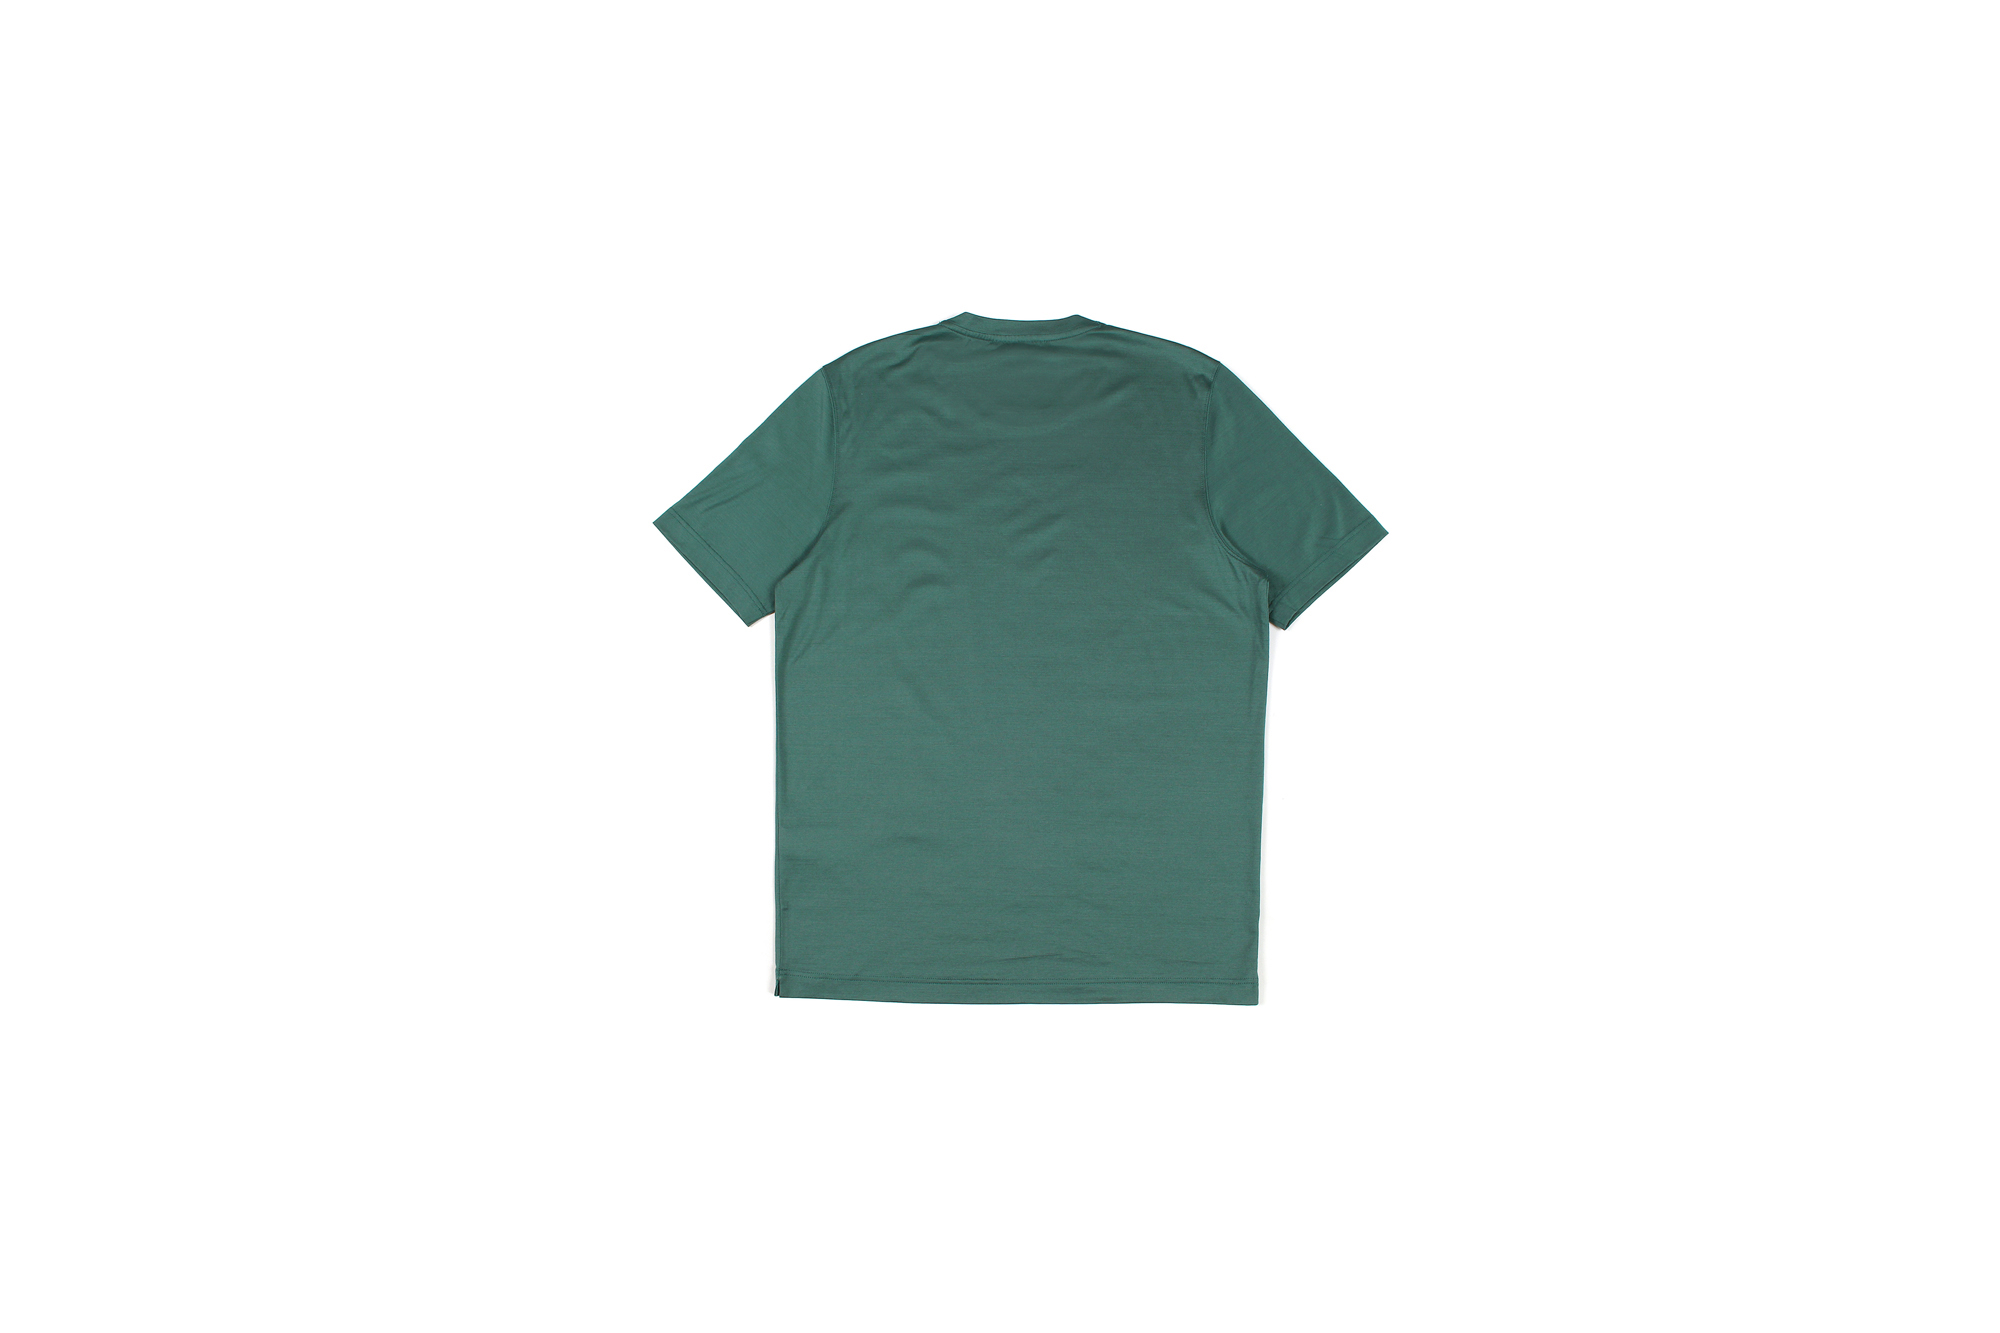 Gran Sasso (グランサッソ) Crew Neck T-shirt (クルーネック Tシャツ) Mercerised Cotton マーセライズドコットン Tシャツ GREEN (グリーン・481) made in italy (イタリア製) 2022秋冬新作 【入荷しました】【フリー分発売開始】愛知 名古屋 Alto e Diritto altoediritto アルトエデリット